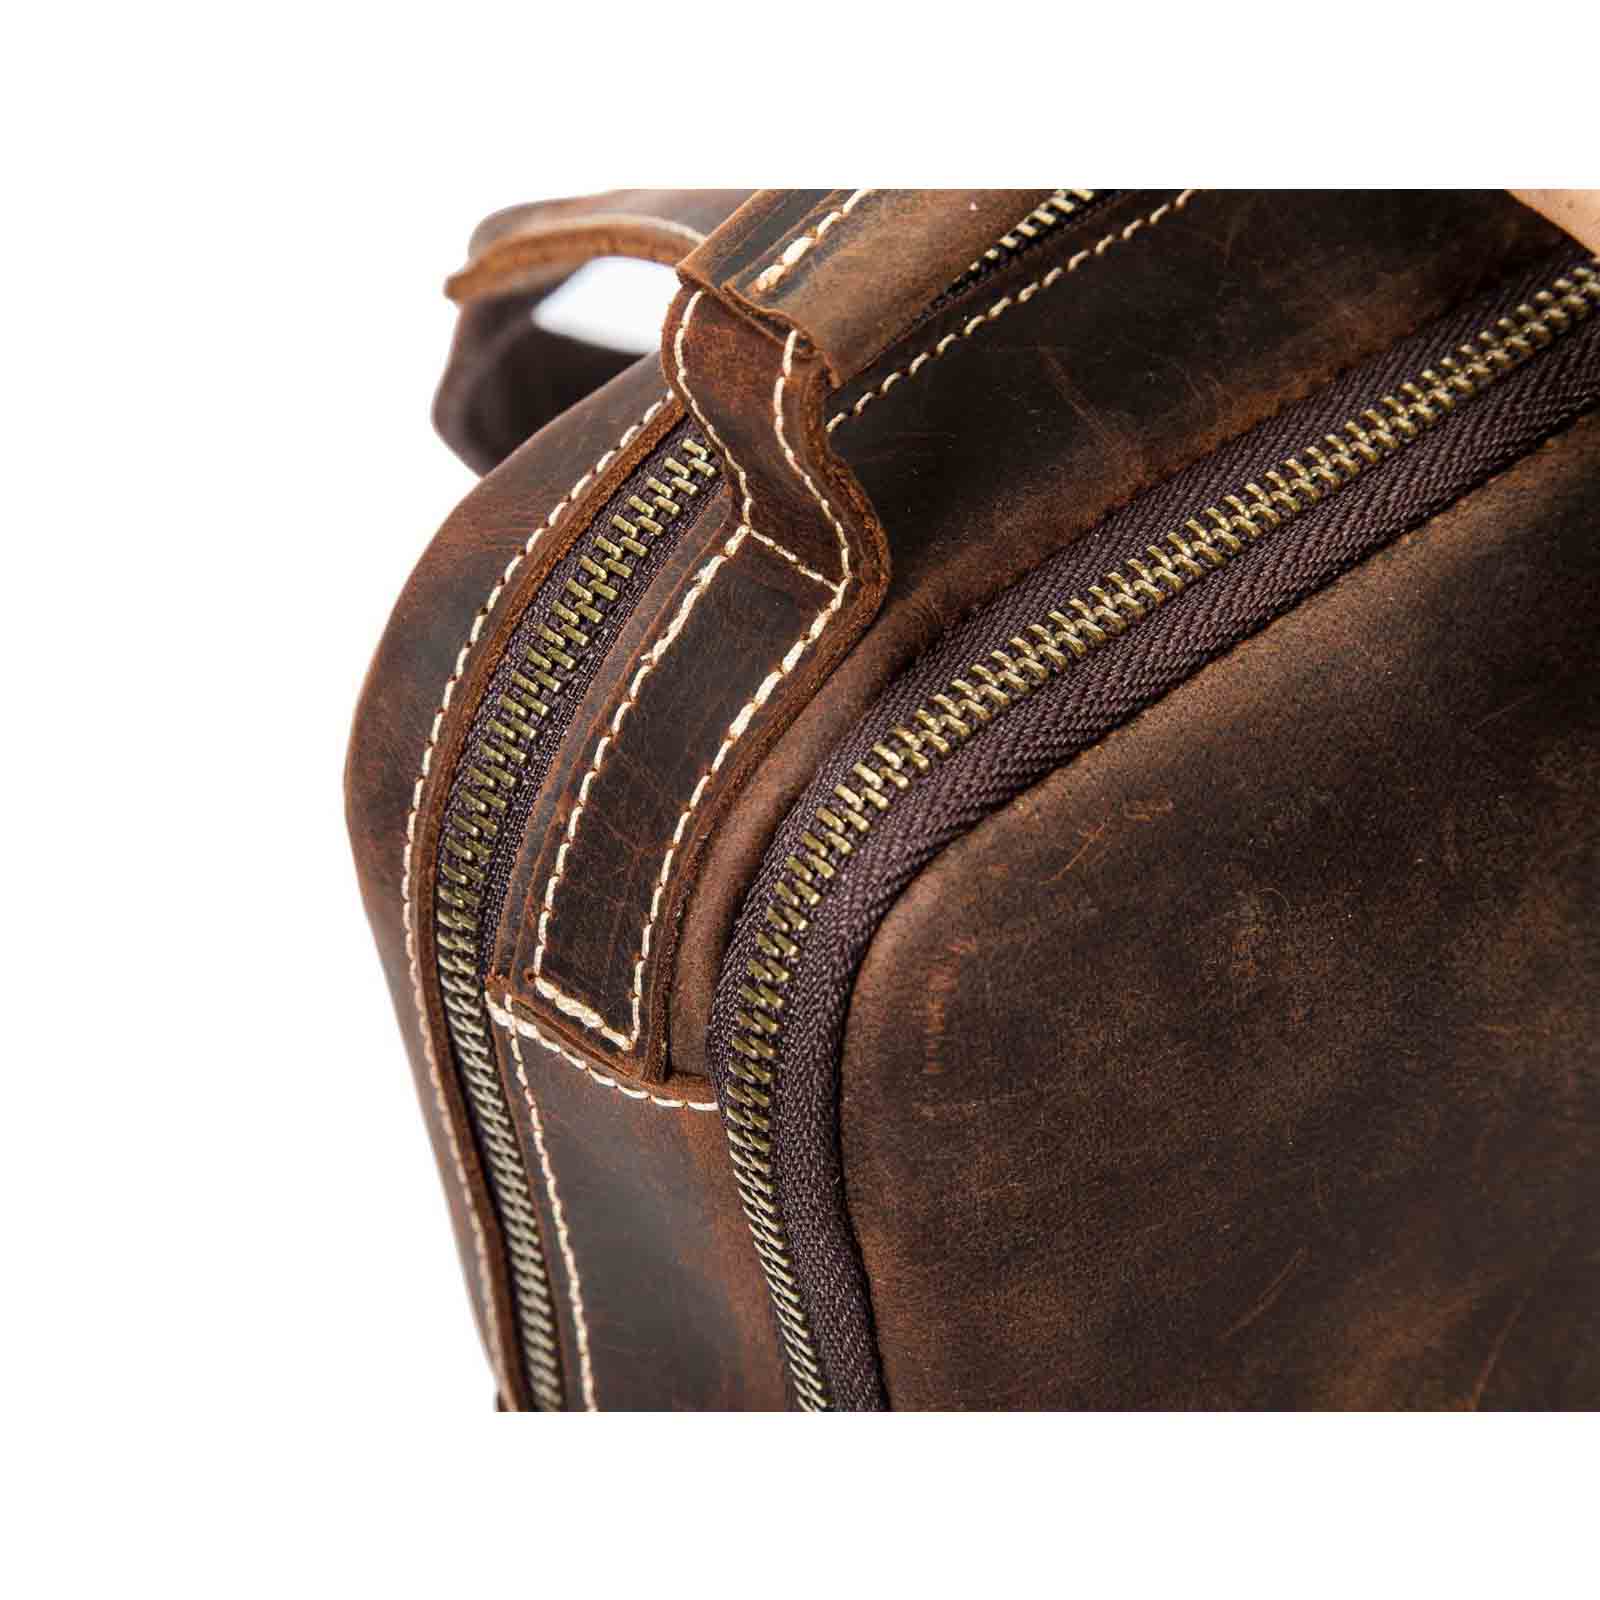 Designer Vintage Leather Sling Bag